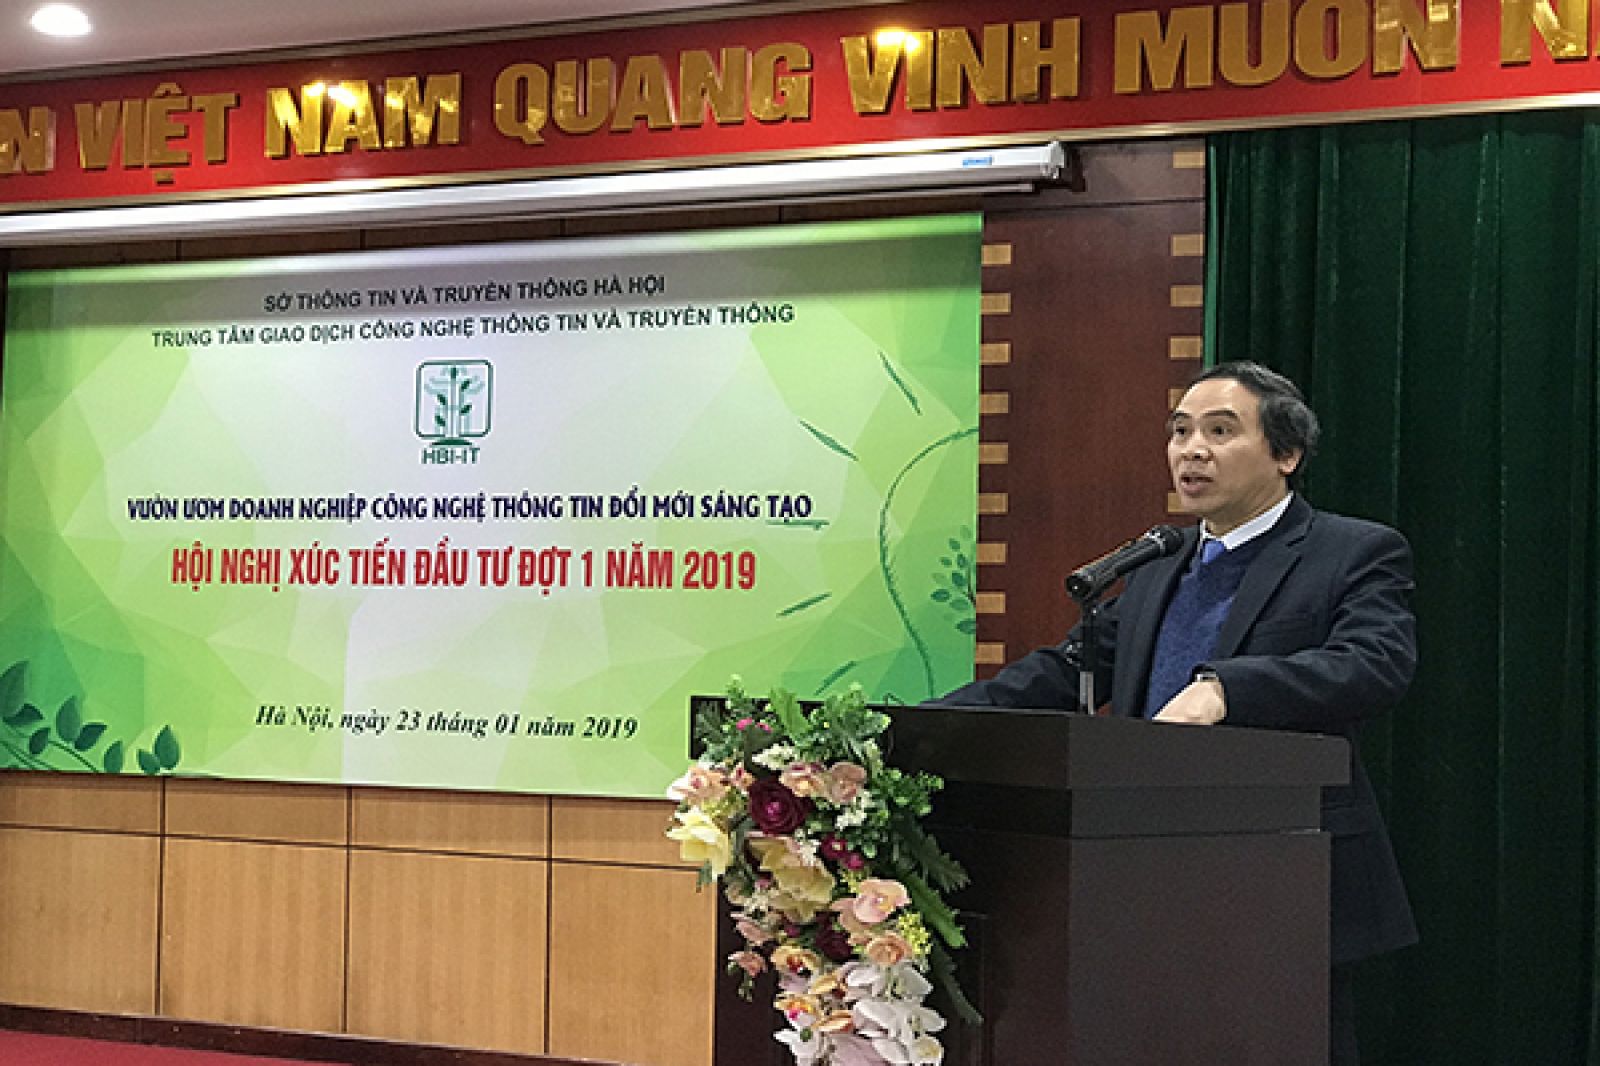  Ông Phạm Tấn Cương, Trưởng Ban quản lý Vườn ươm phát biểu tại Hội nghị